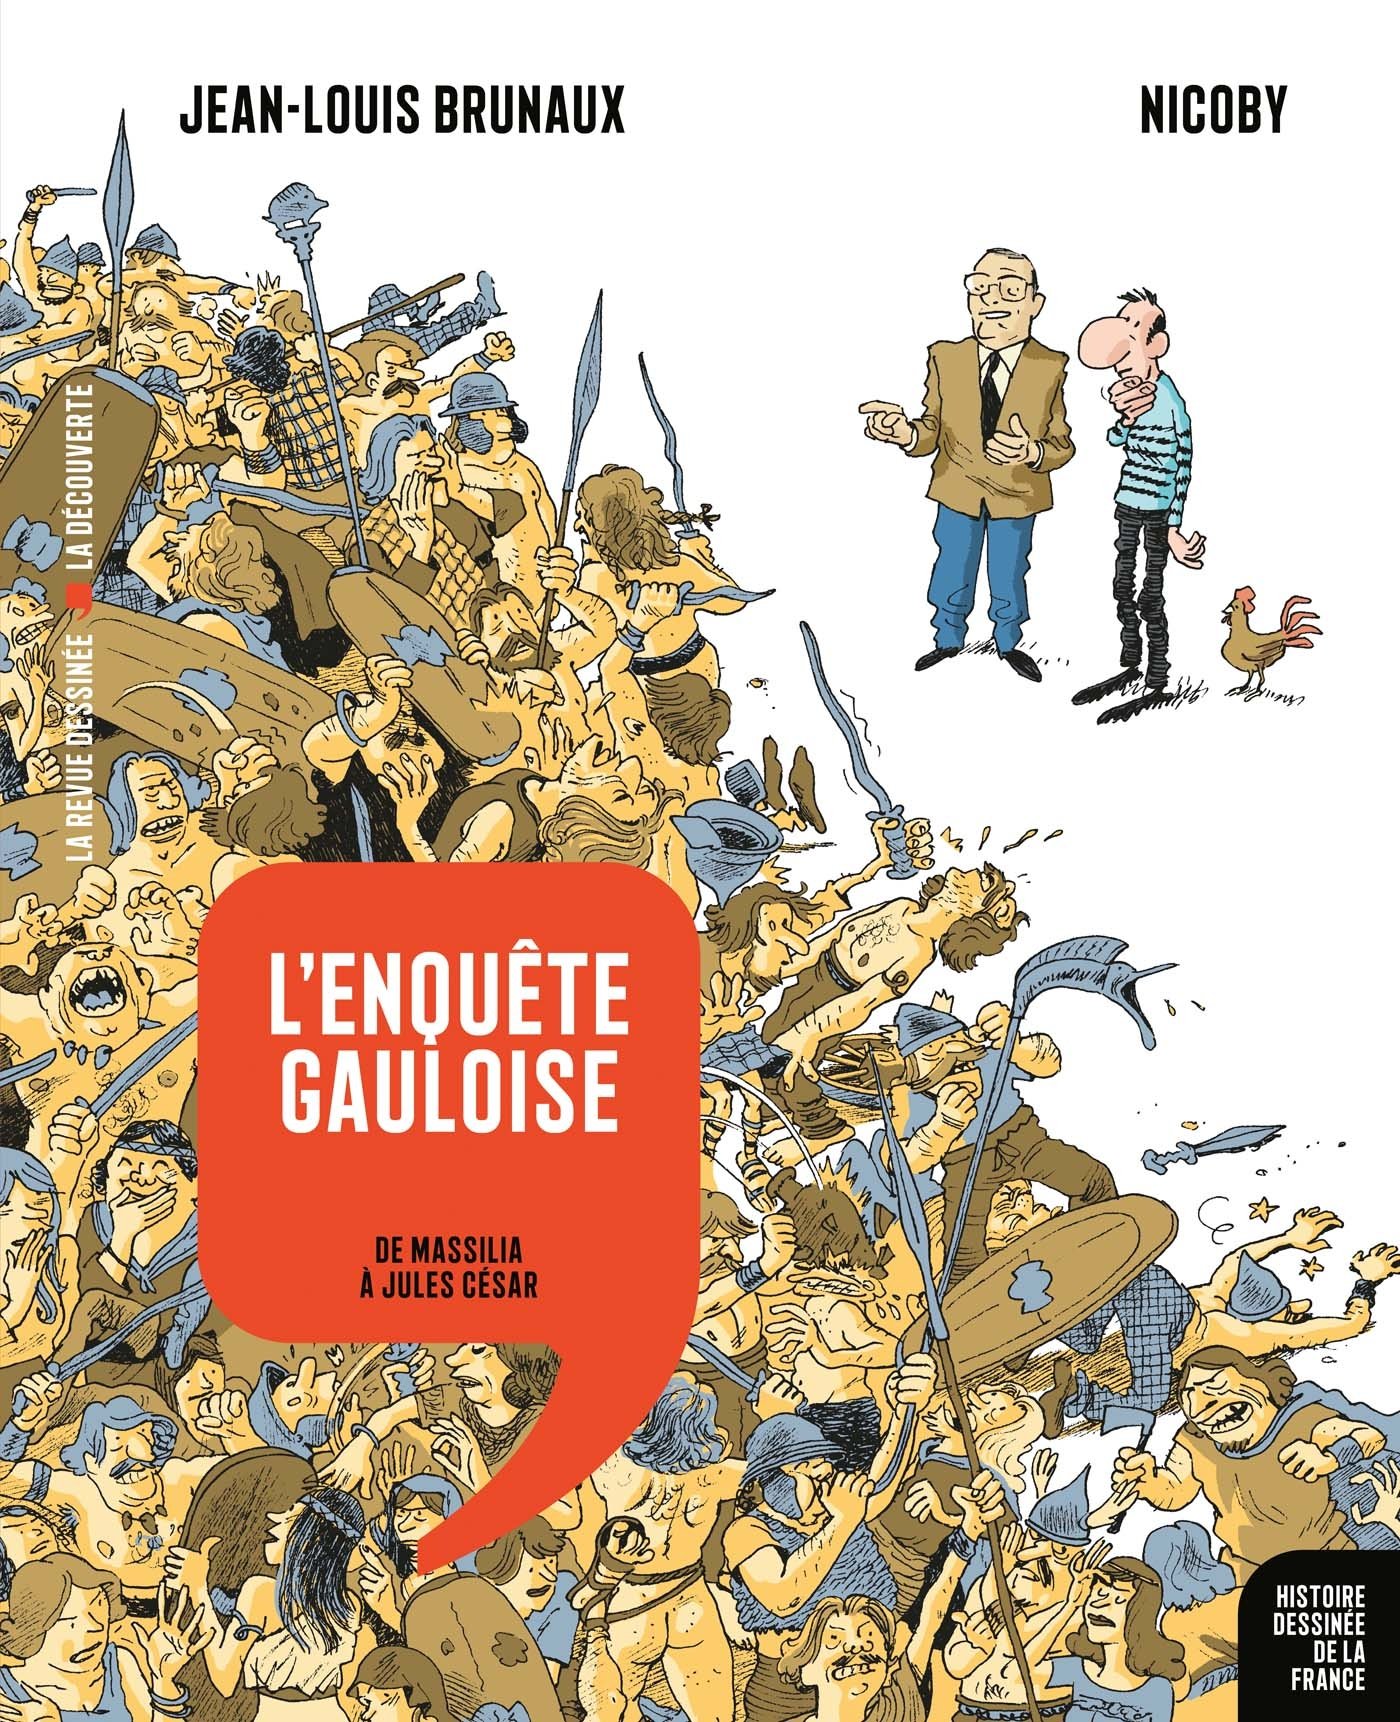 L'Enquête gauloise, de Massilia à Jules César, 2017, 128 p. / 